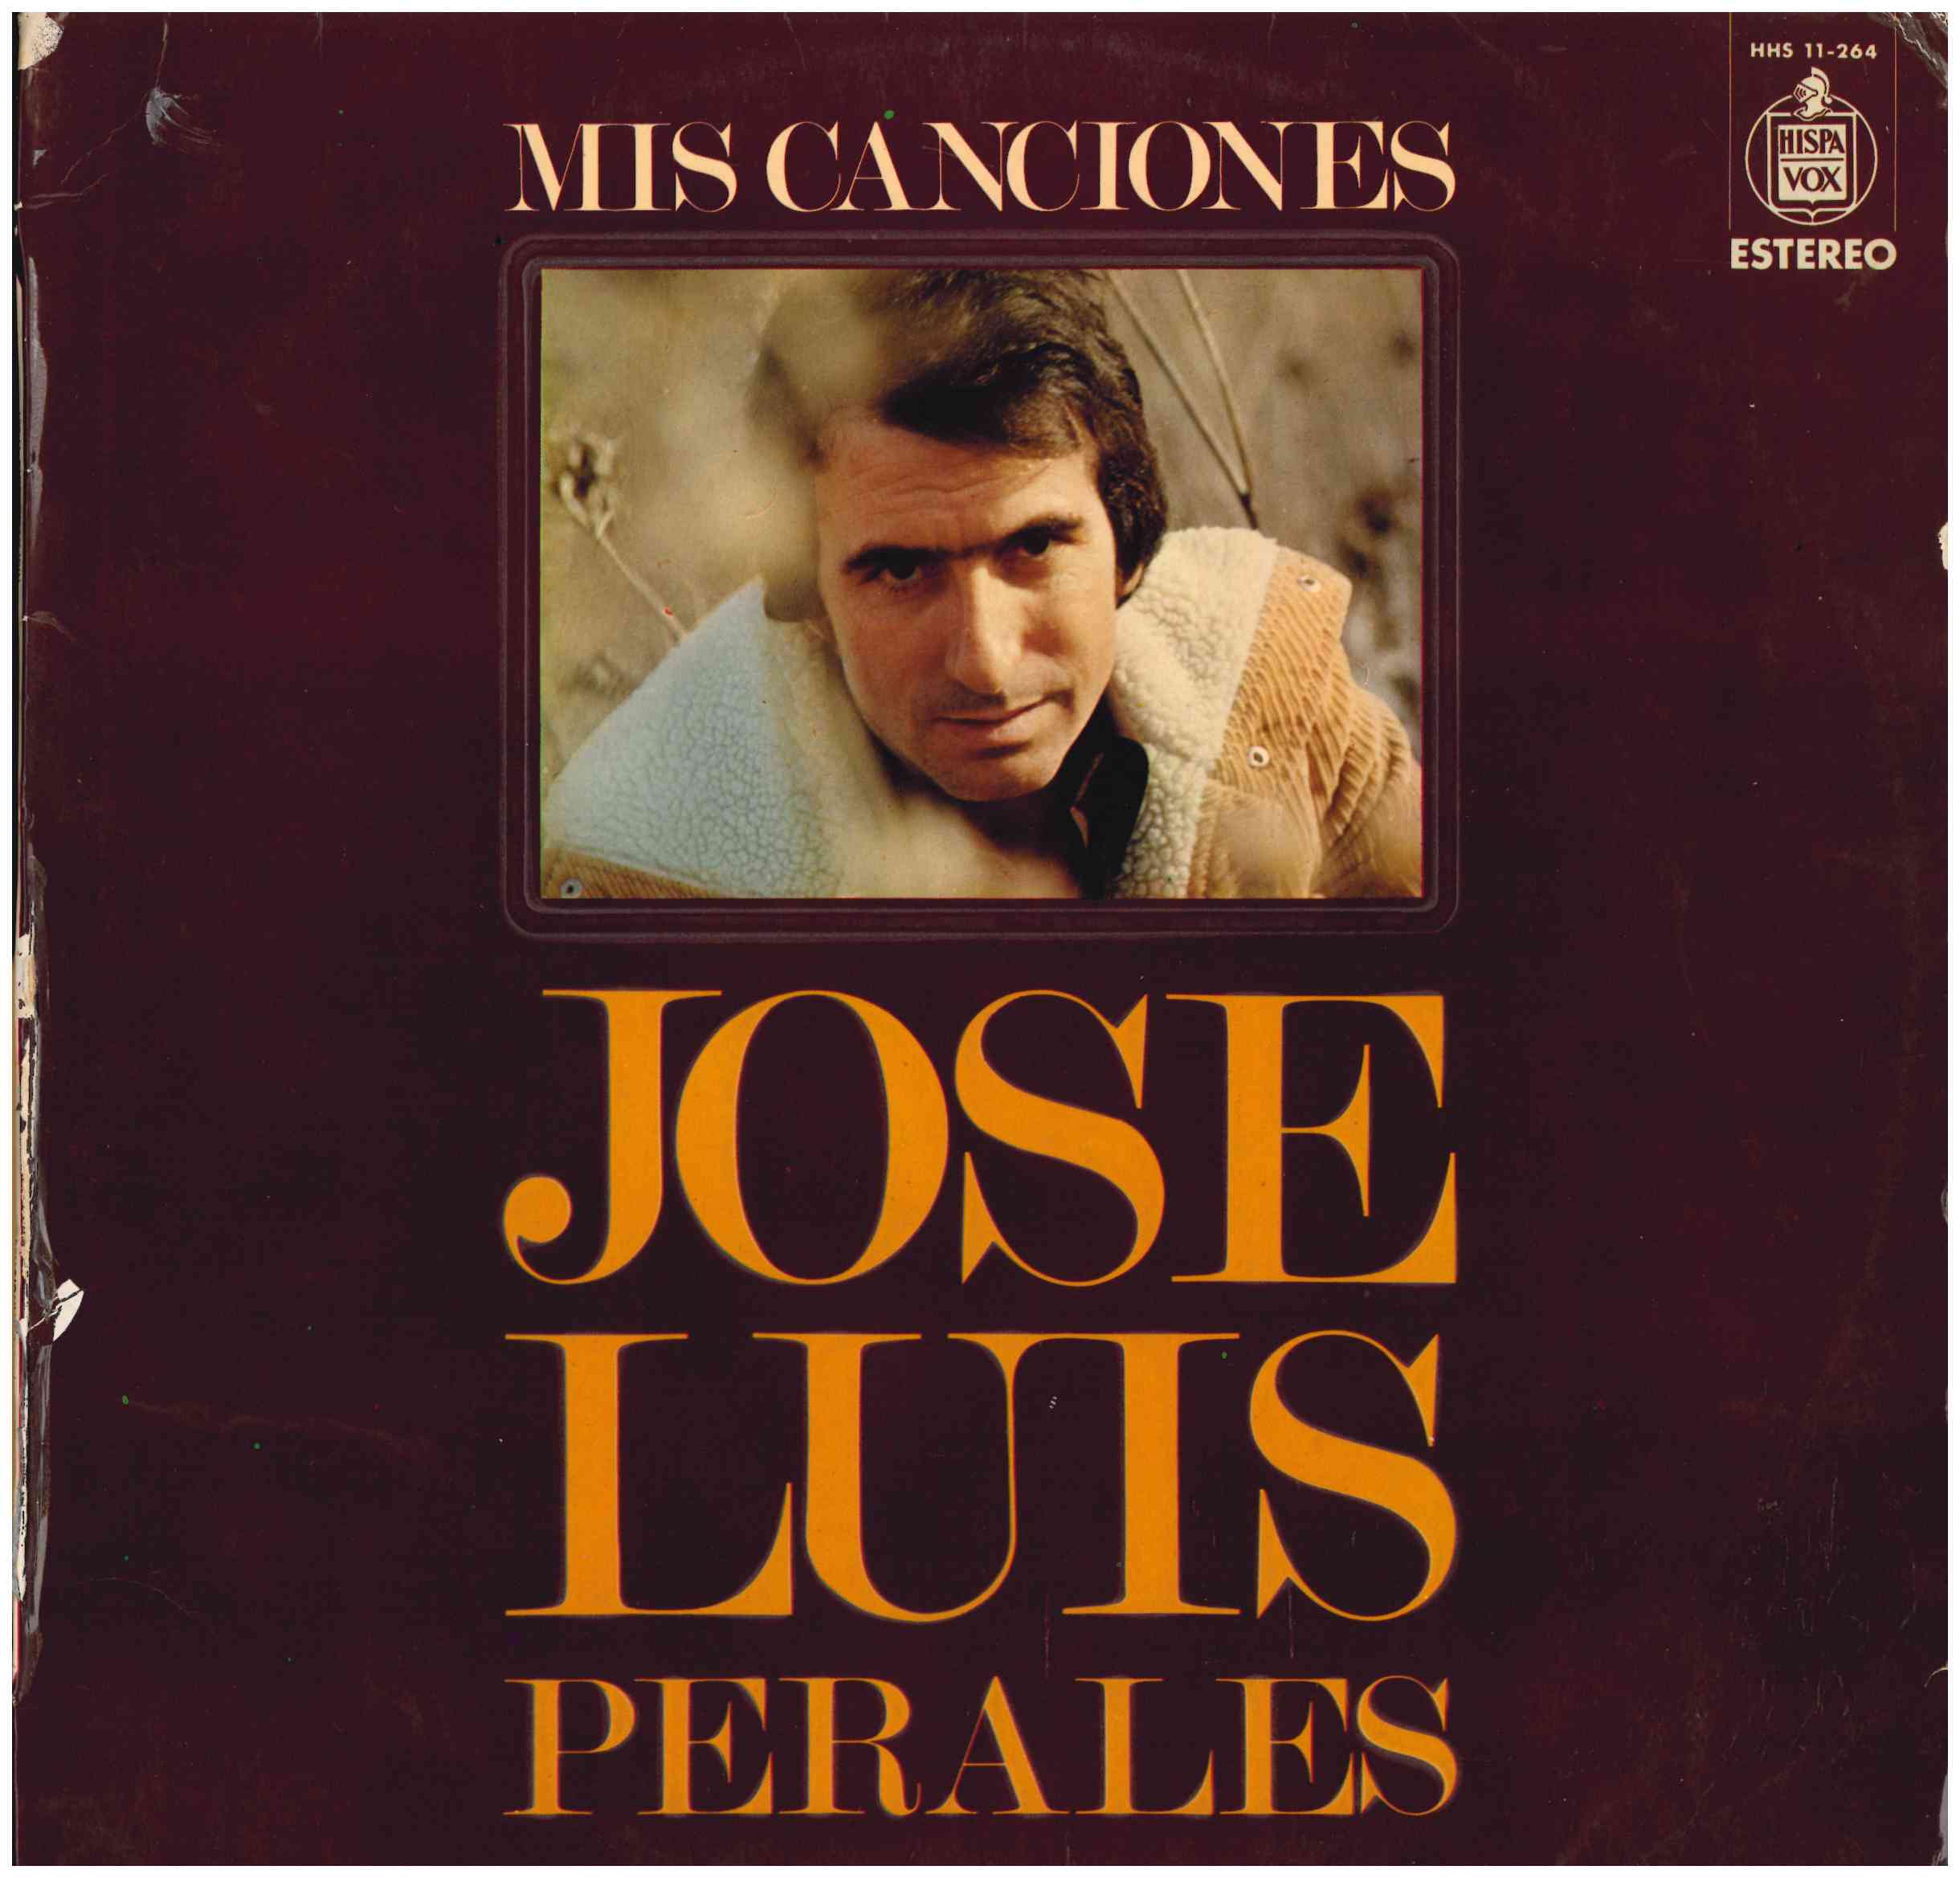 José Luis Perales. Mis canciones. Hispavox 1974 (HHS 11-264)